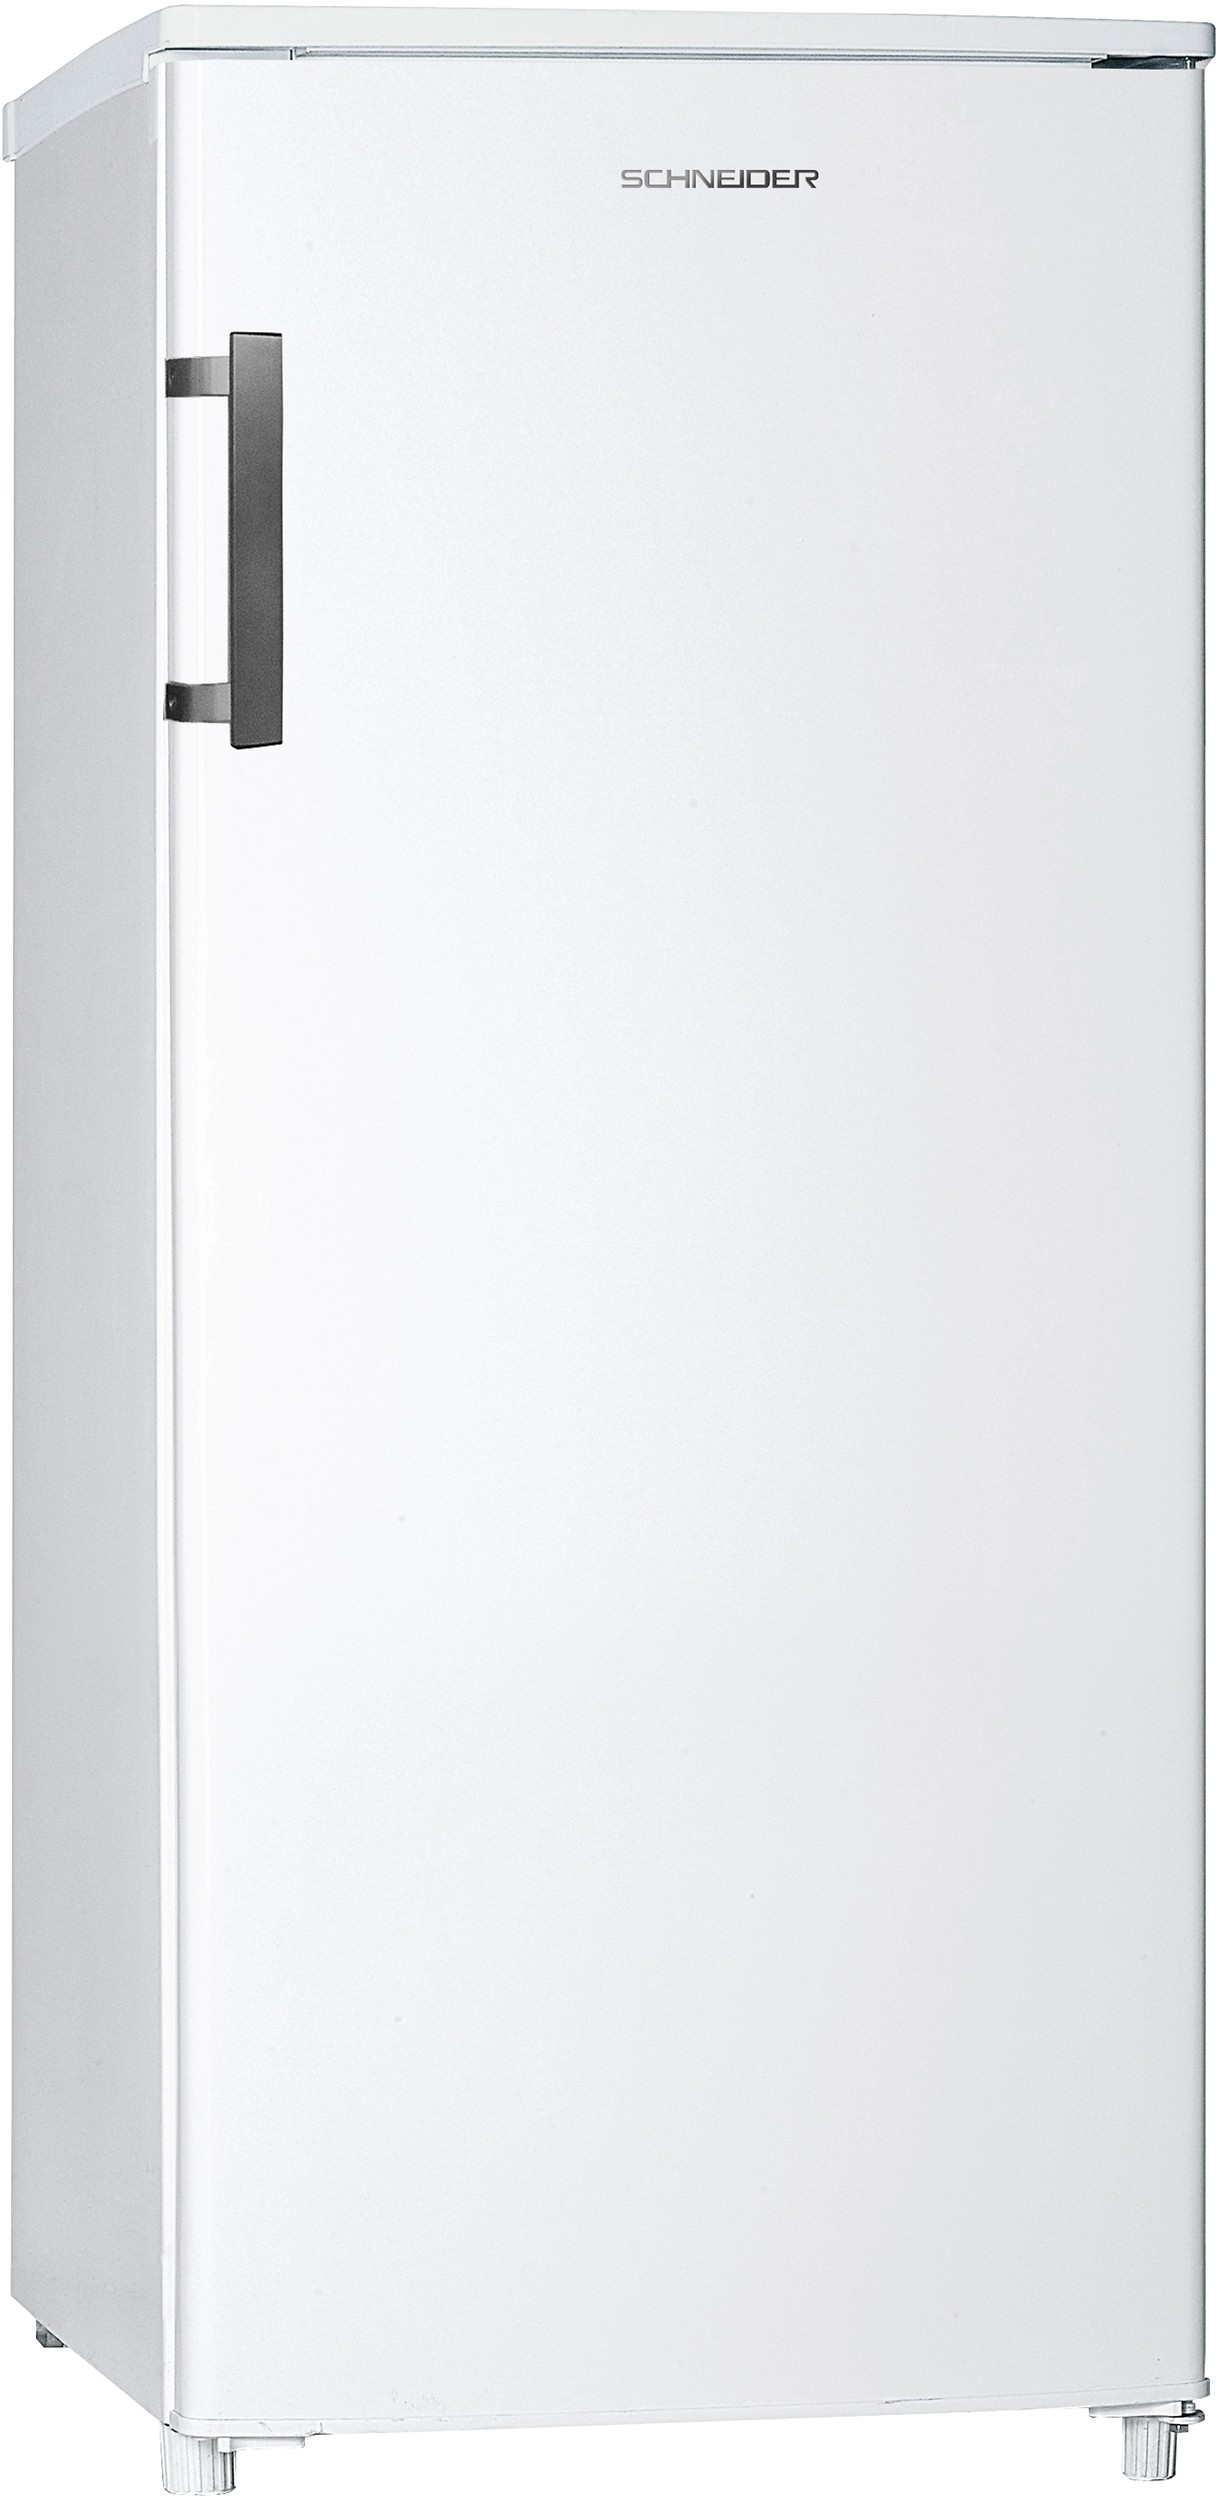 SCHNEIDER Réfrigérateur 1 porte 193L Blanc - SCOD193W